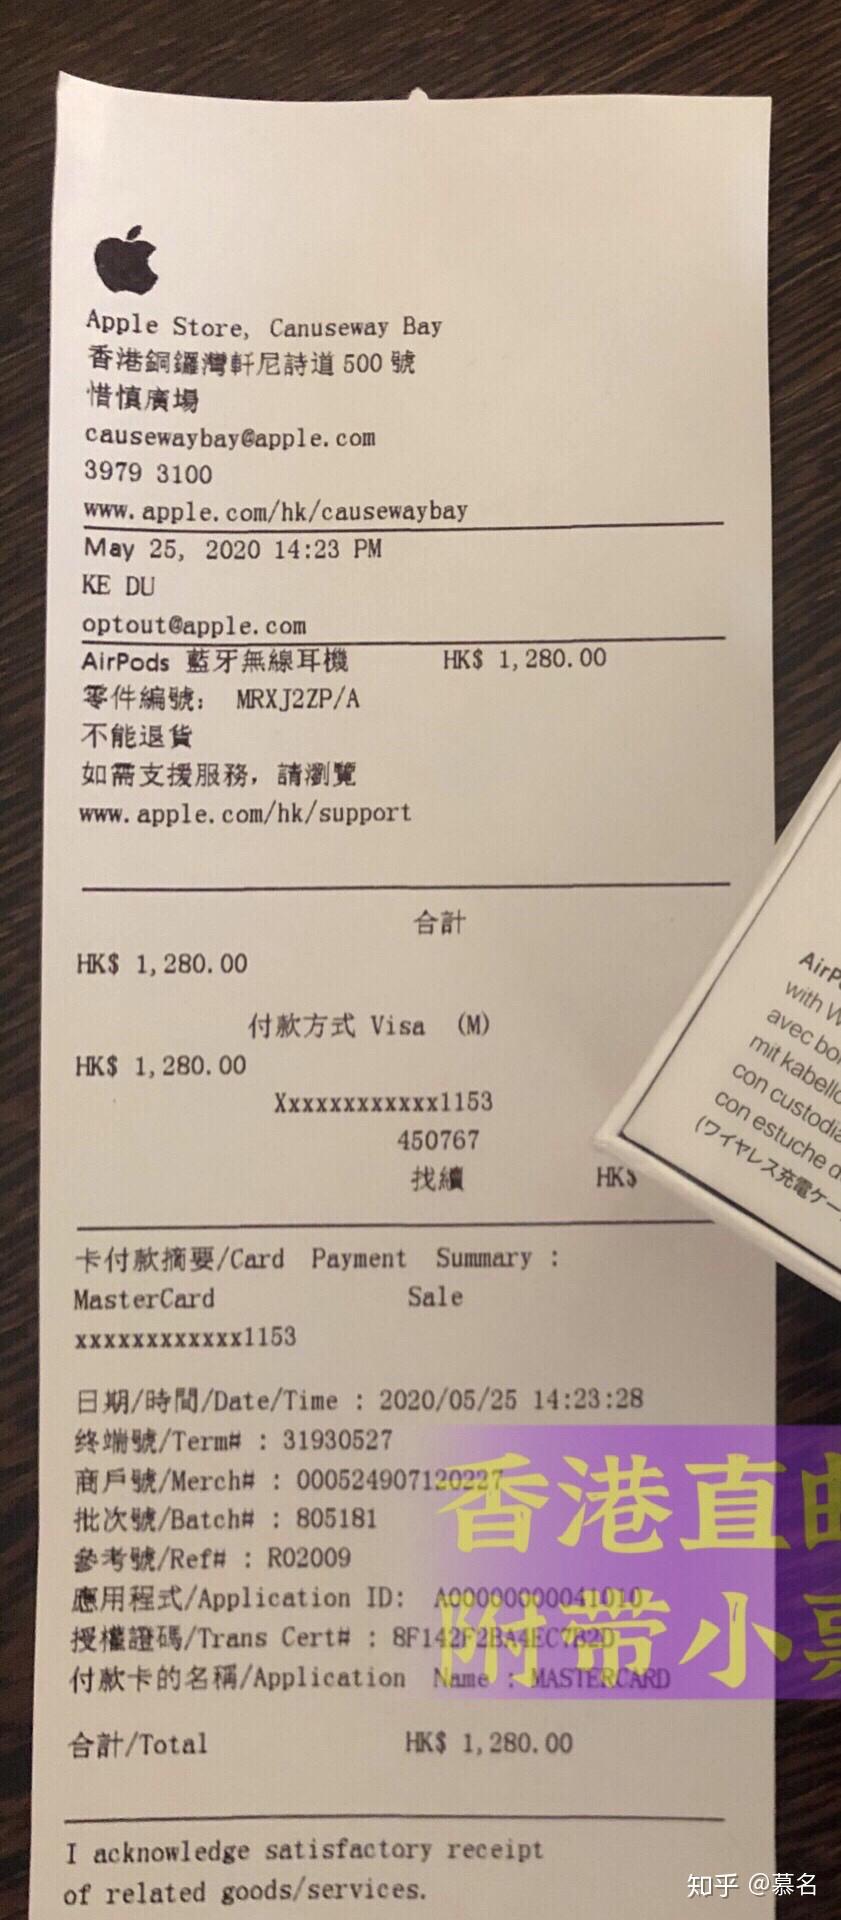 请问这张apple香港购物小票是真的吗? 